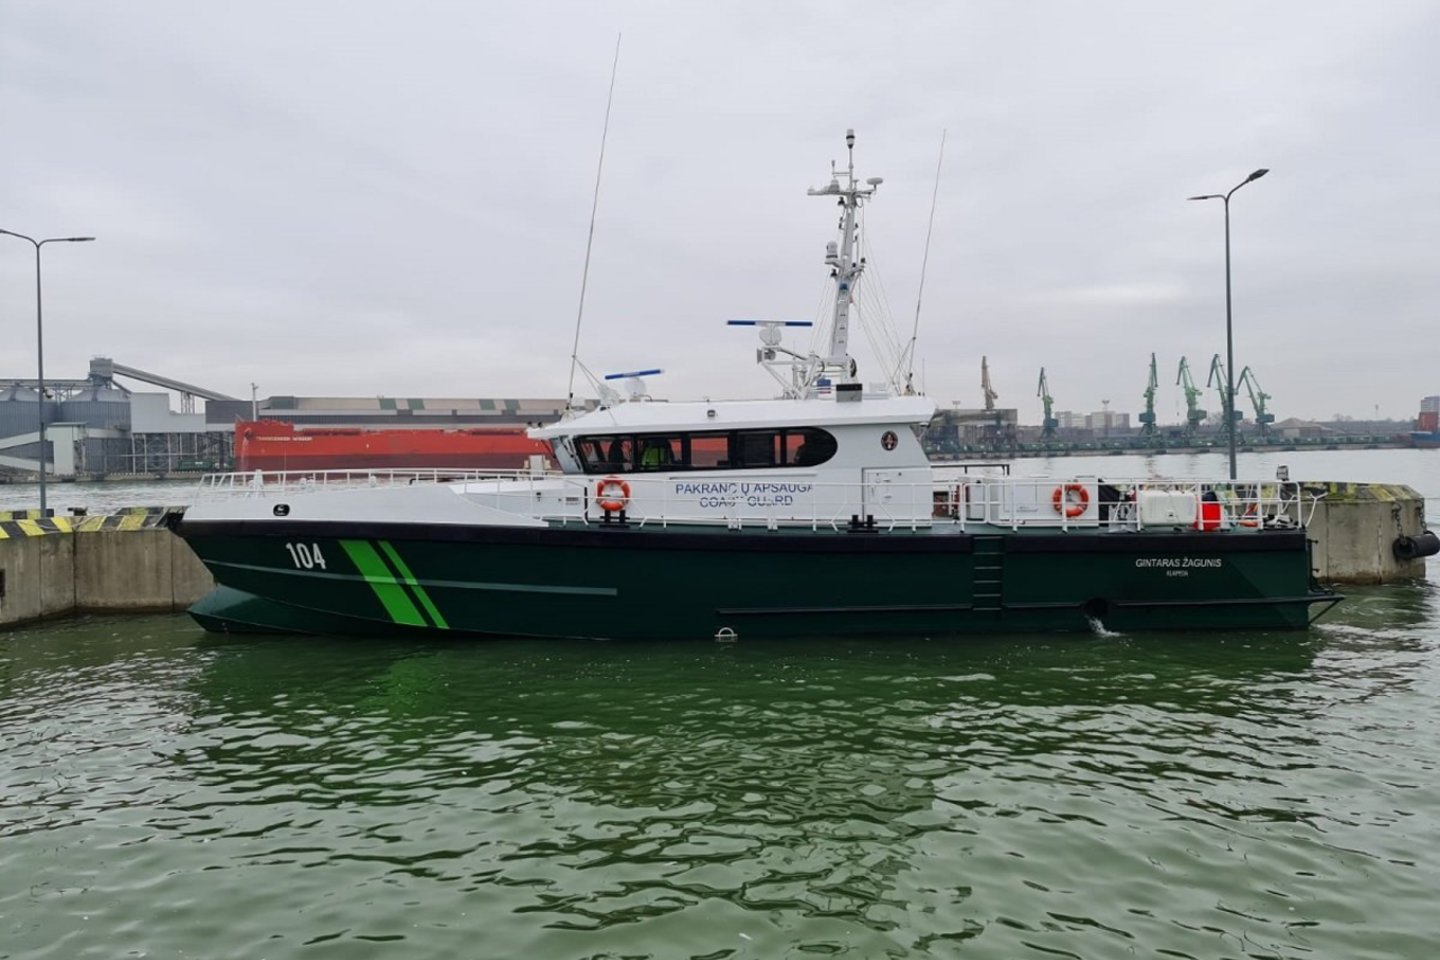 Penktadienį Klaipėdoje bus pristatomi nauji patrulinis pasieniečių laivas „Gintaras Žagunis“ ir trys kateriai.<br>Pranešėjų spaudai nuotr.